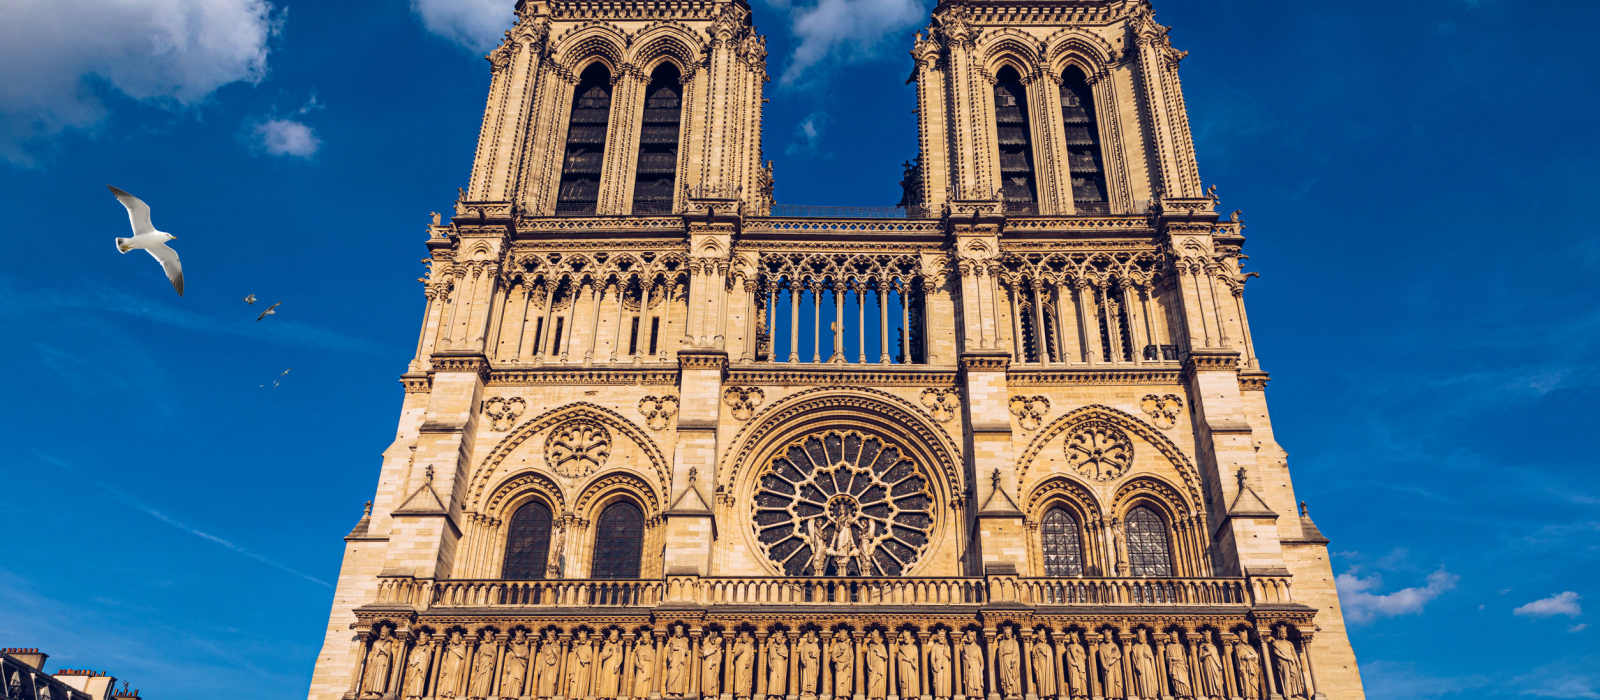 Notre-Dame de Paris : le monument le plus visité en Europe !